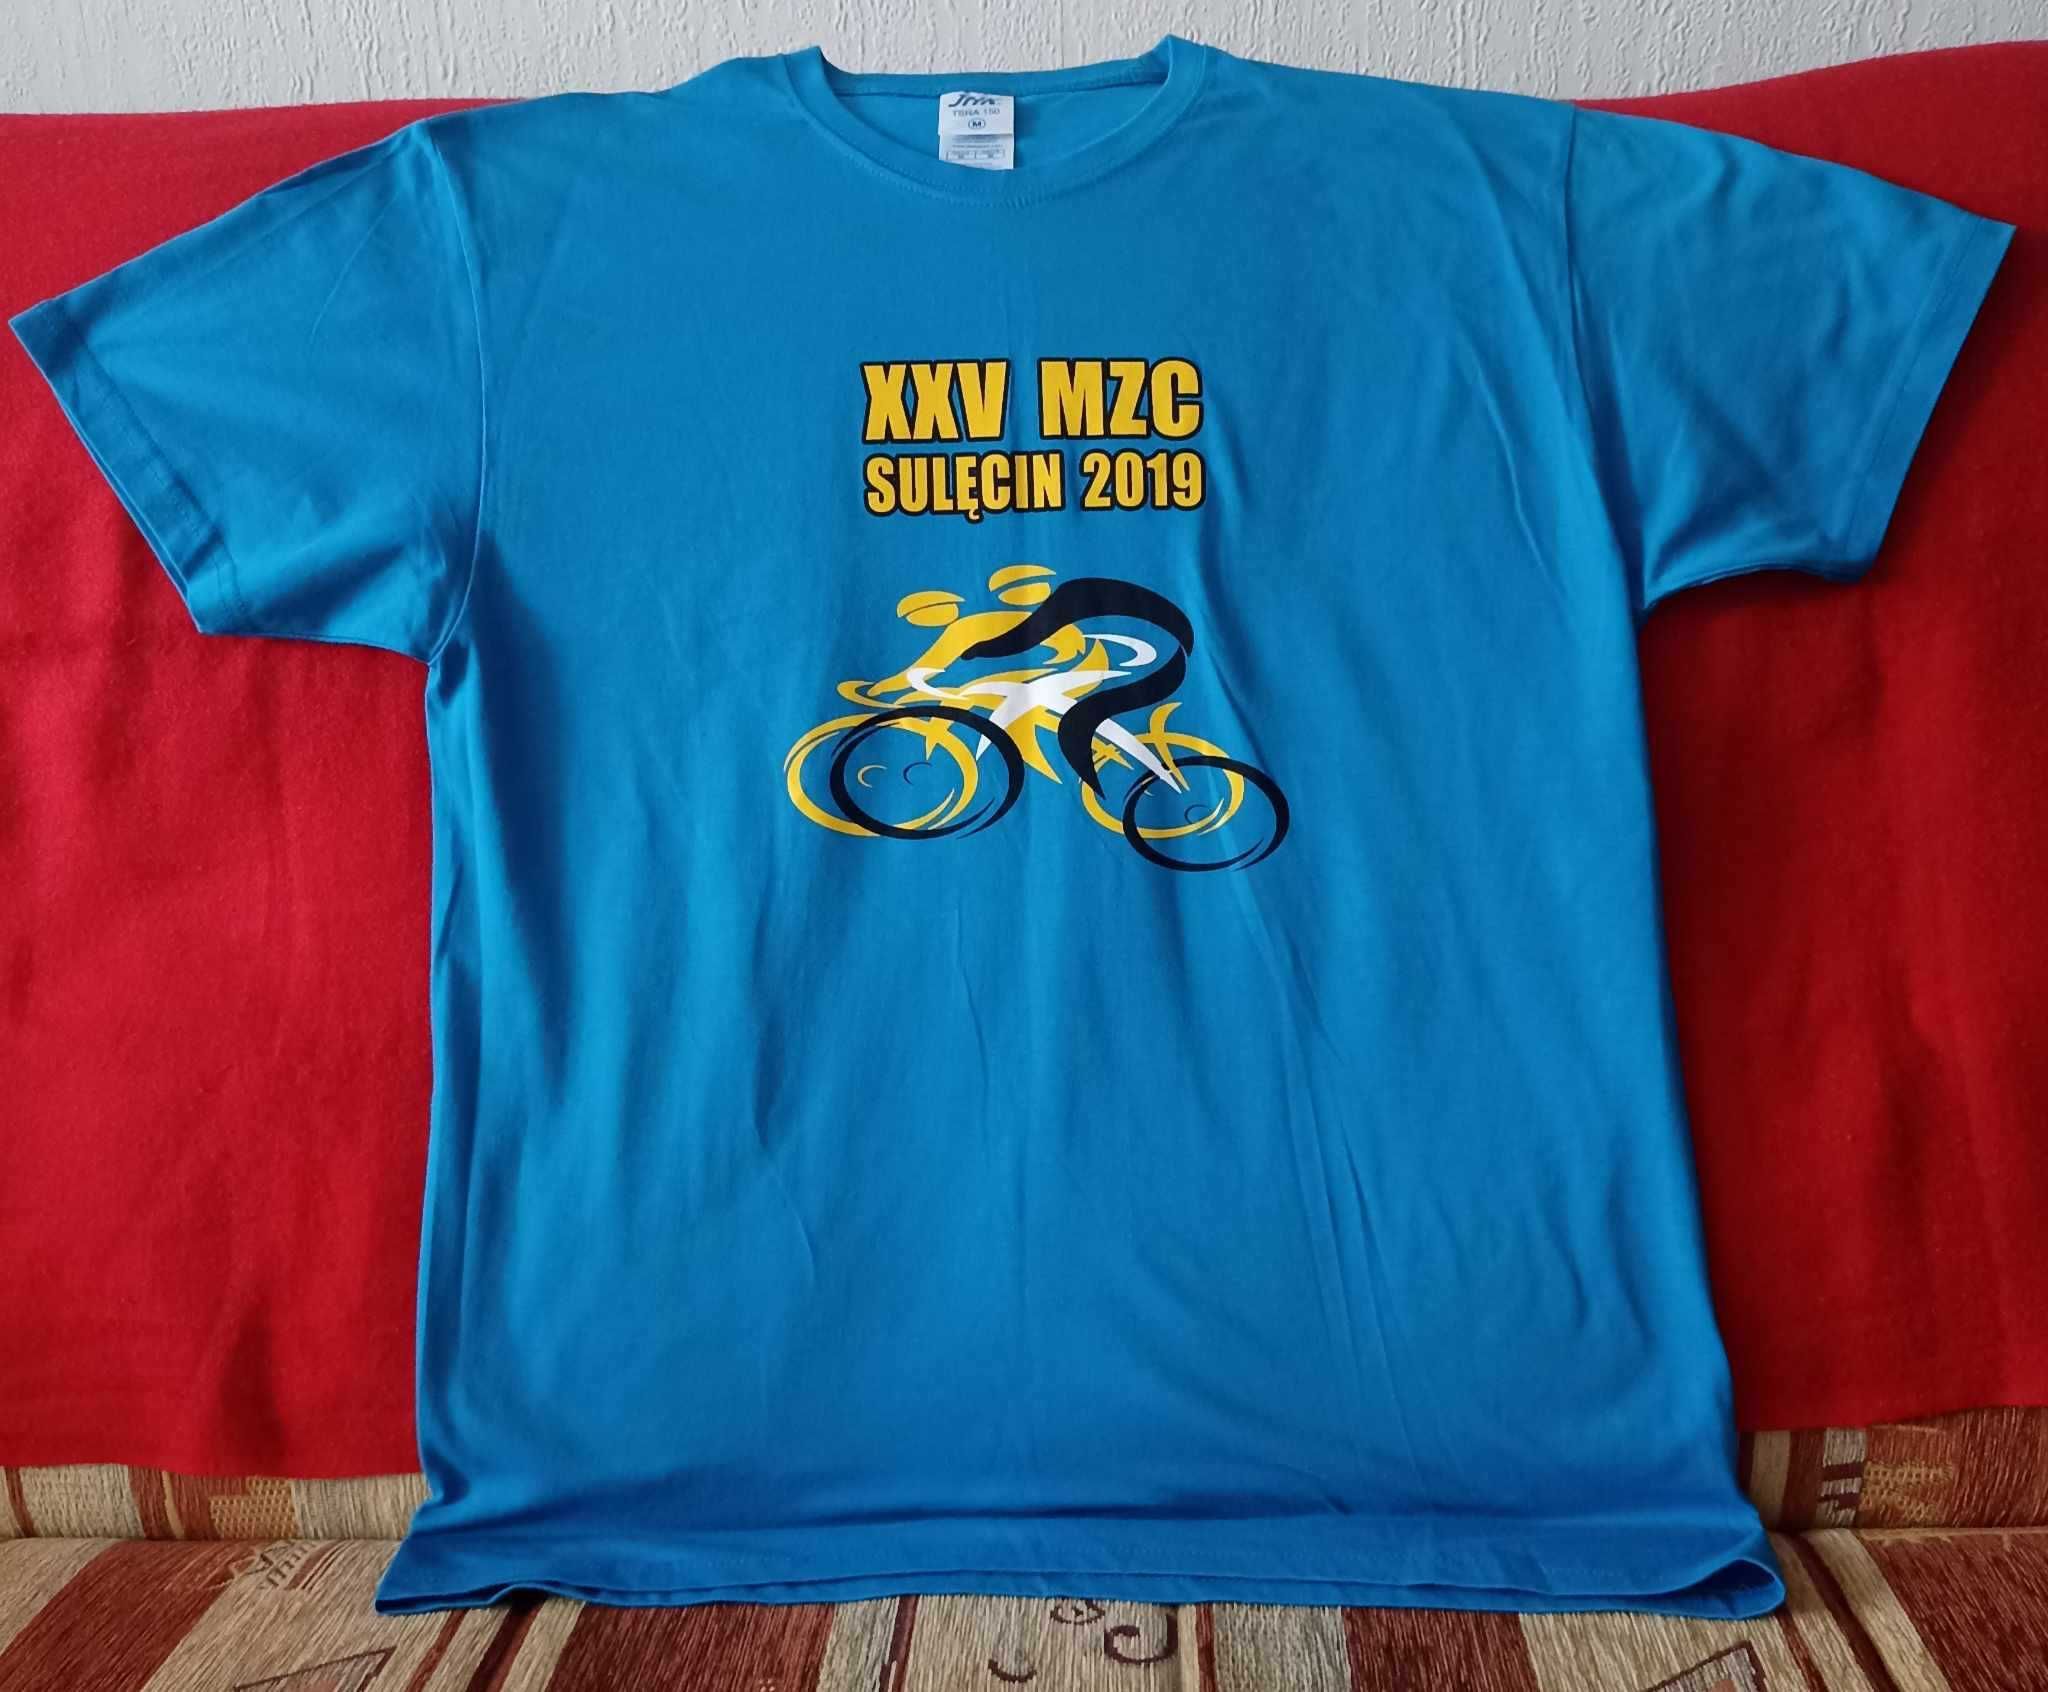 Bawełniana, pamiątkowa koszulka ze zlotu rowerowego - roz. M